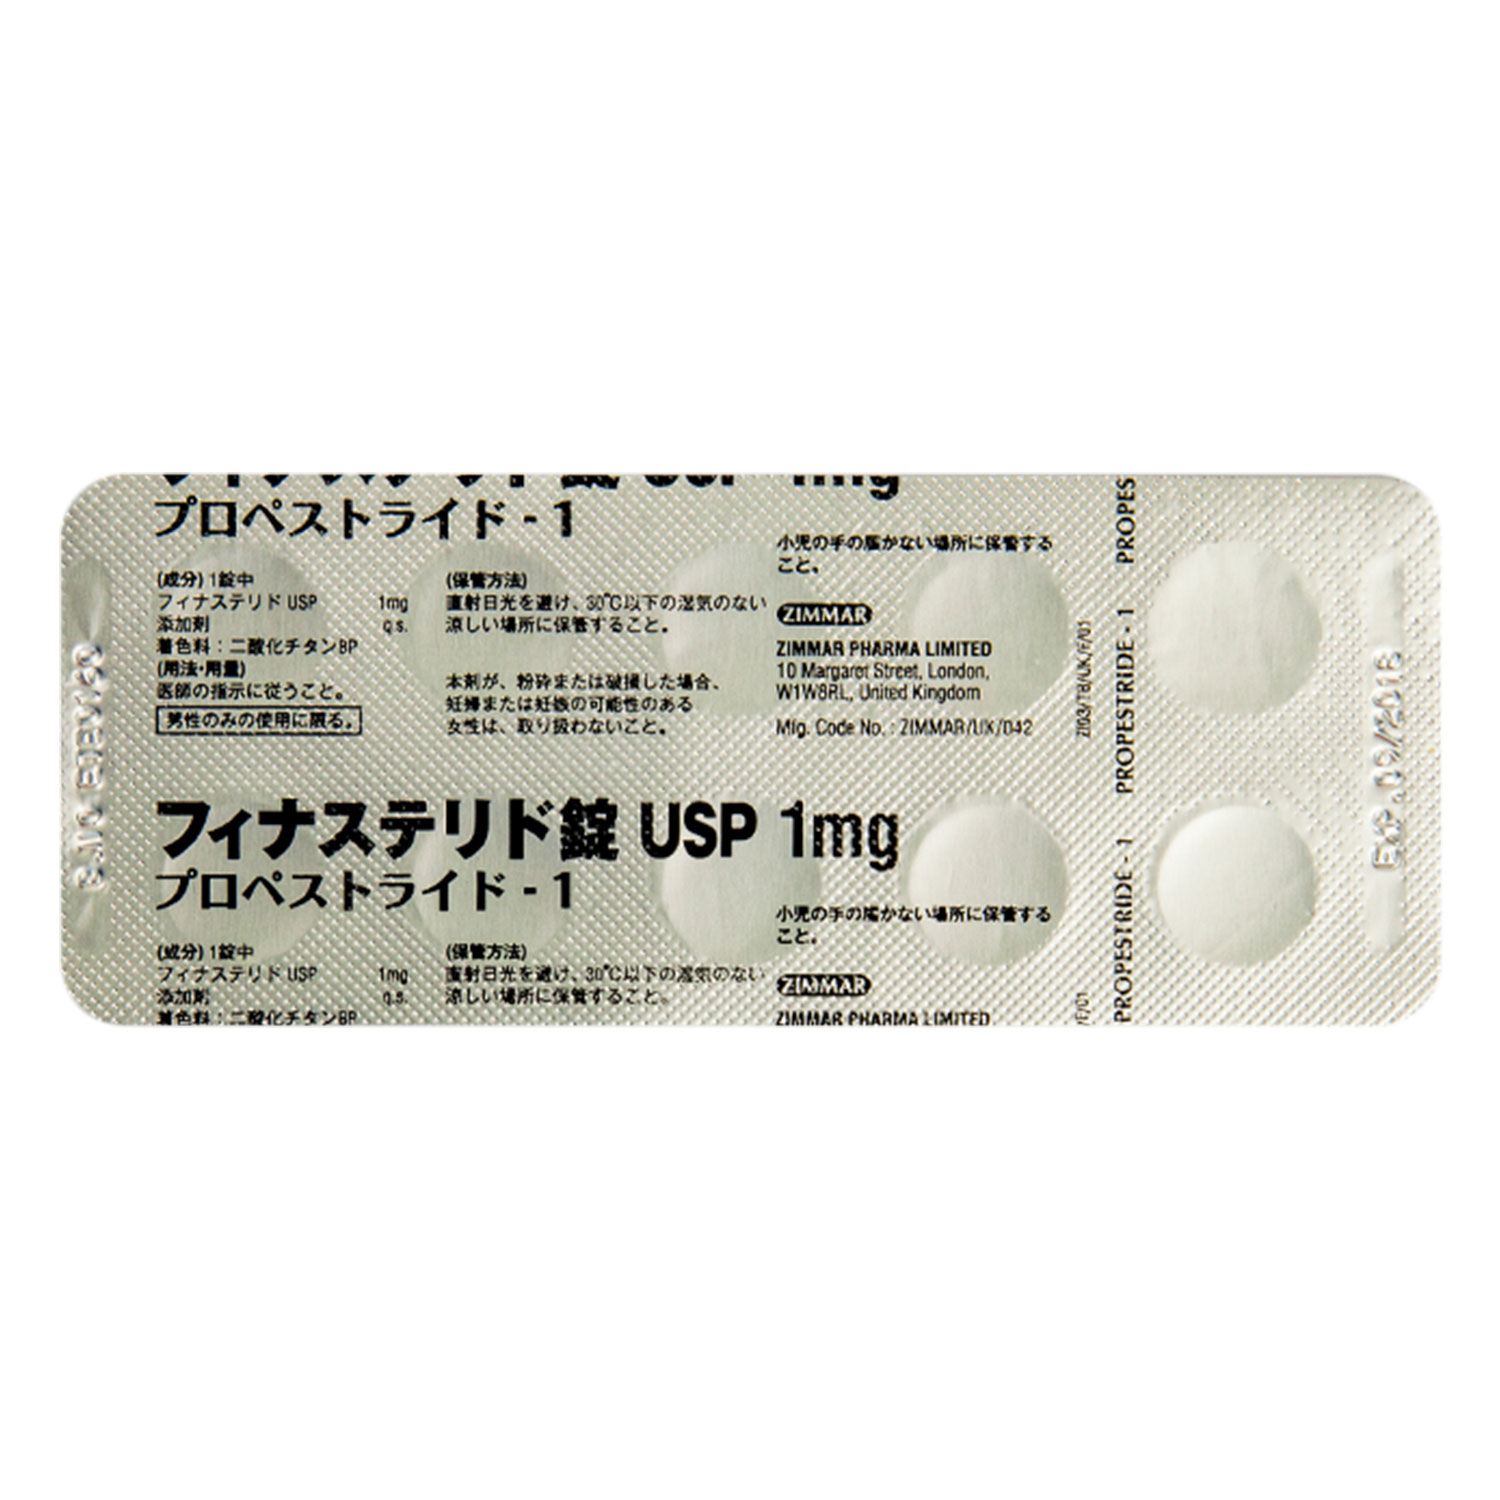 フィナステリド錠1mg通販 Aga治療薬 医薬品個人輸入代行くすりエクスプレス